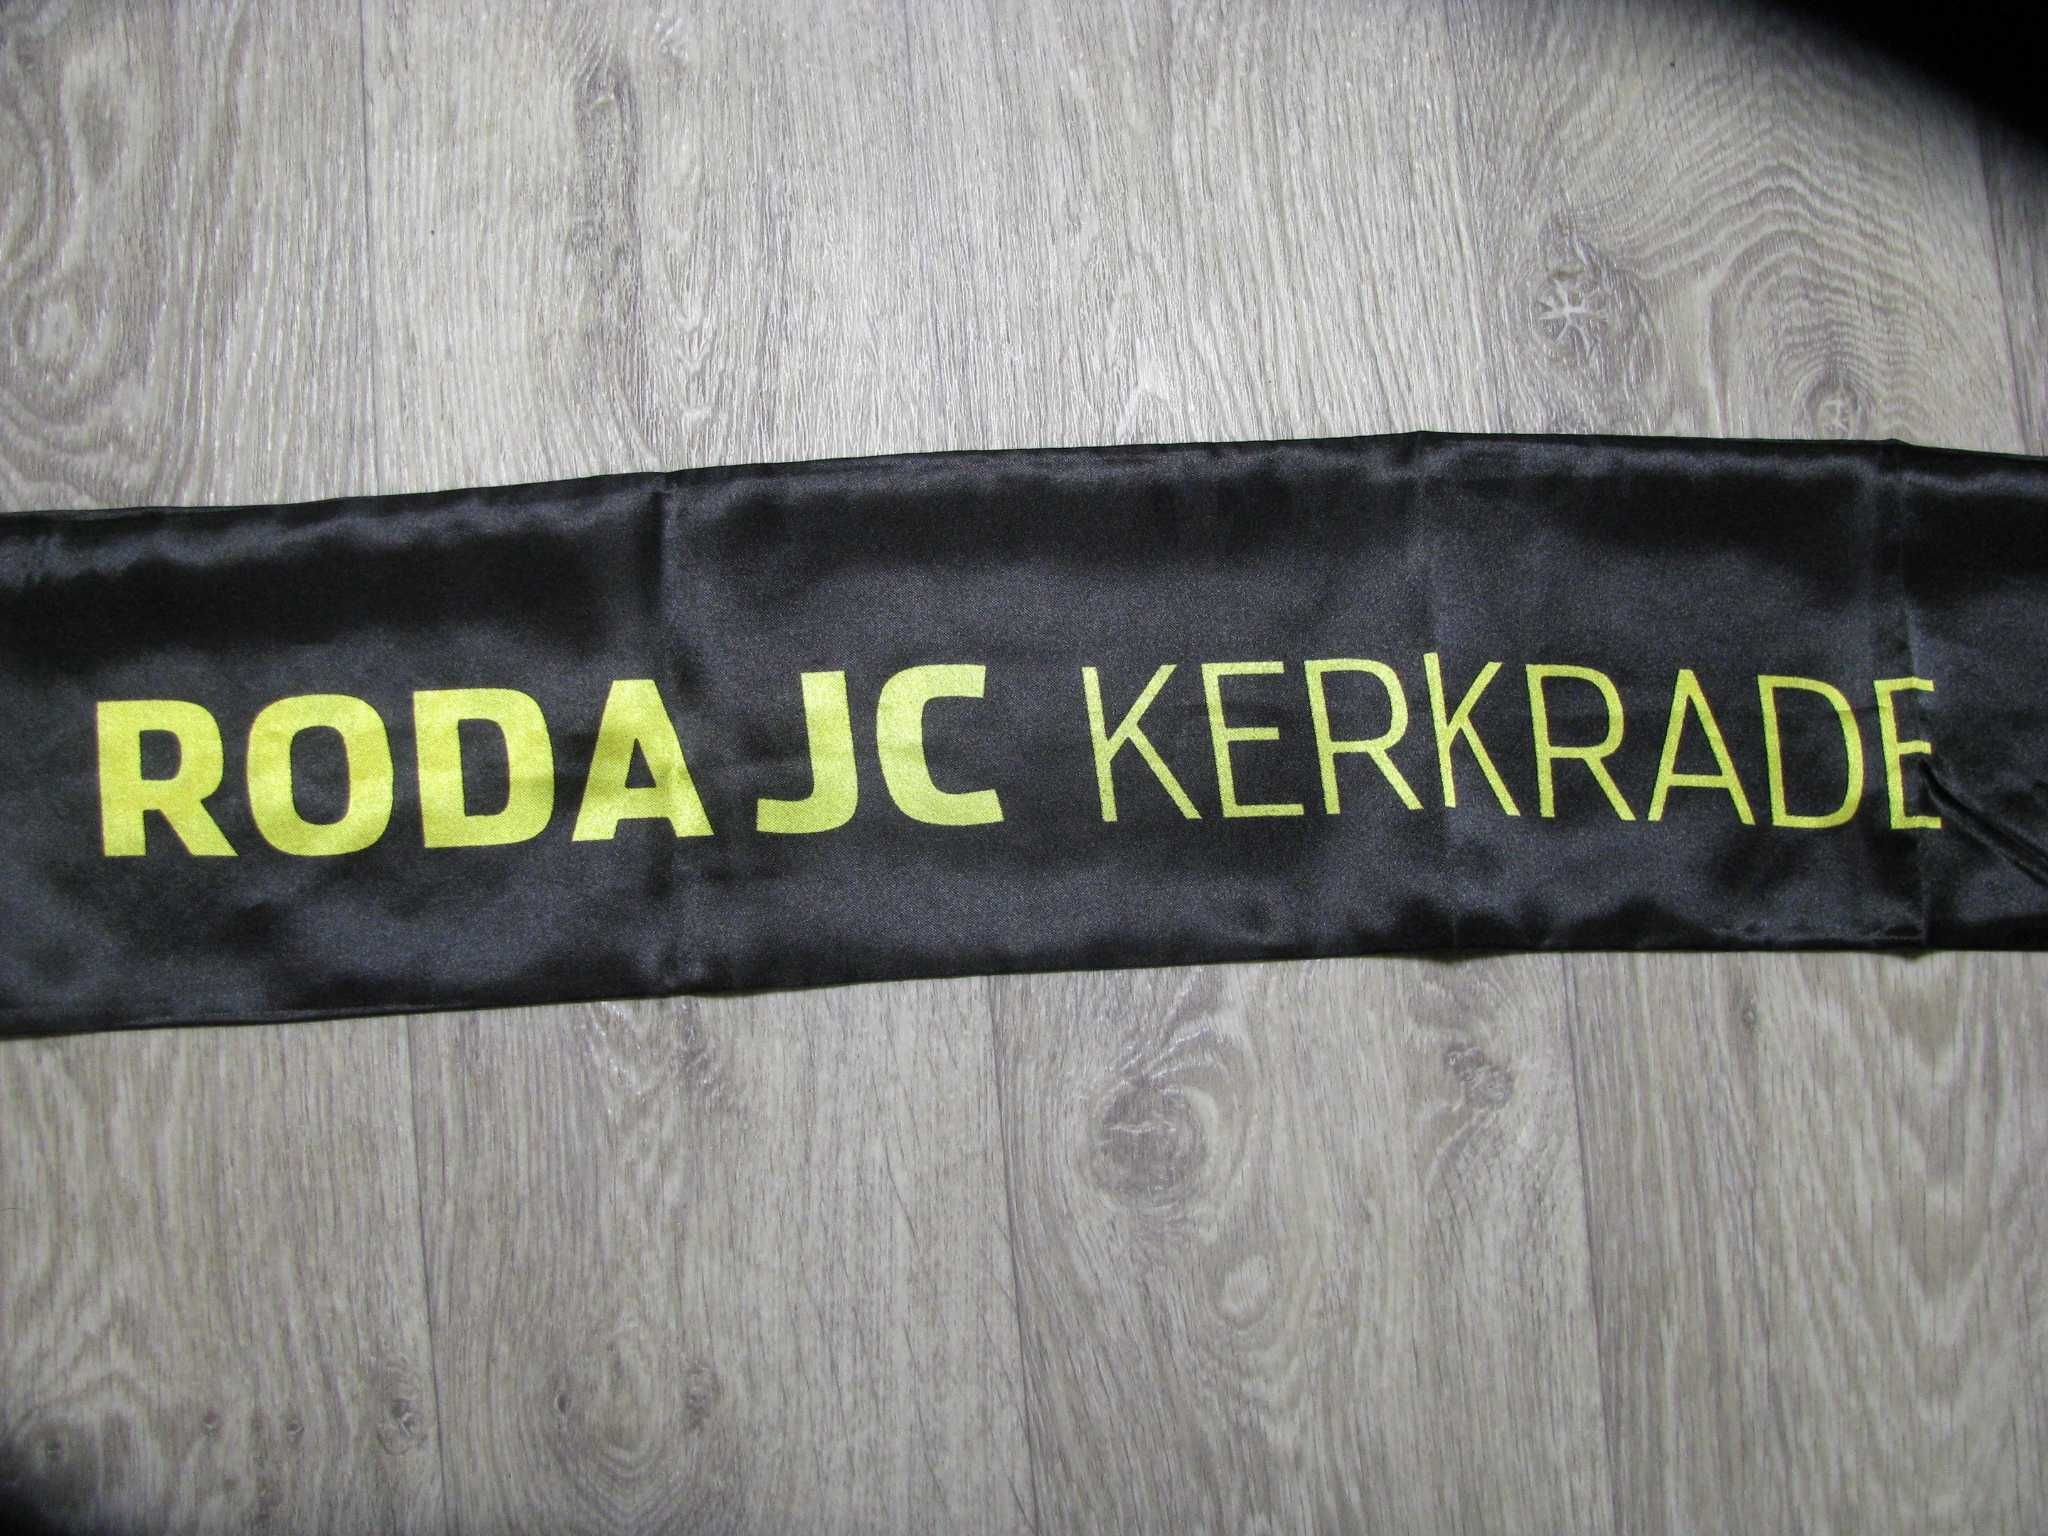 Фанатский шарф ФК Рода Roda JC (Нидерланды)